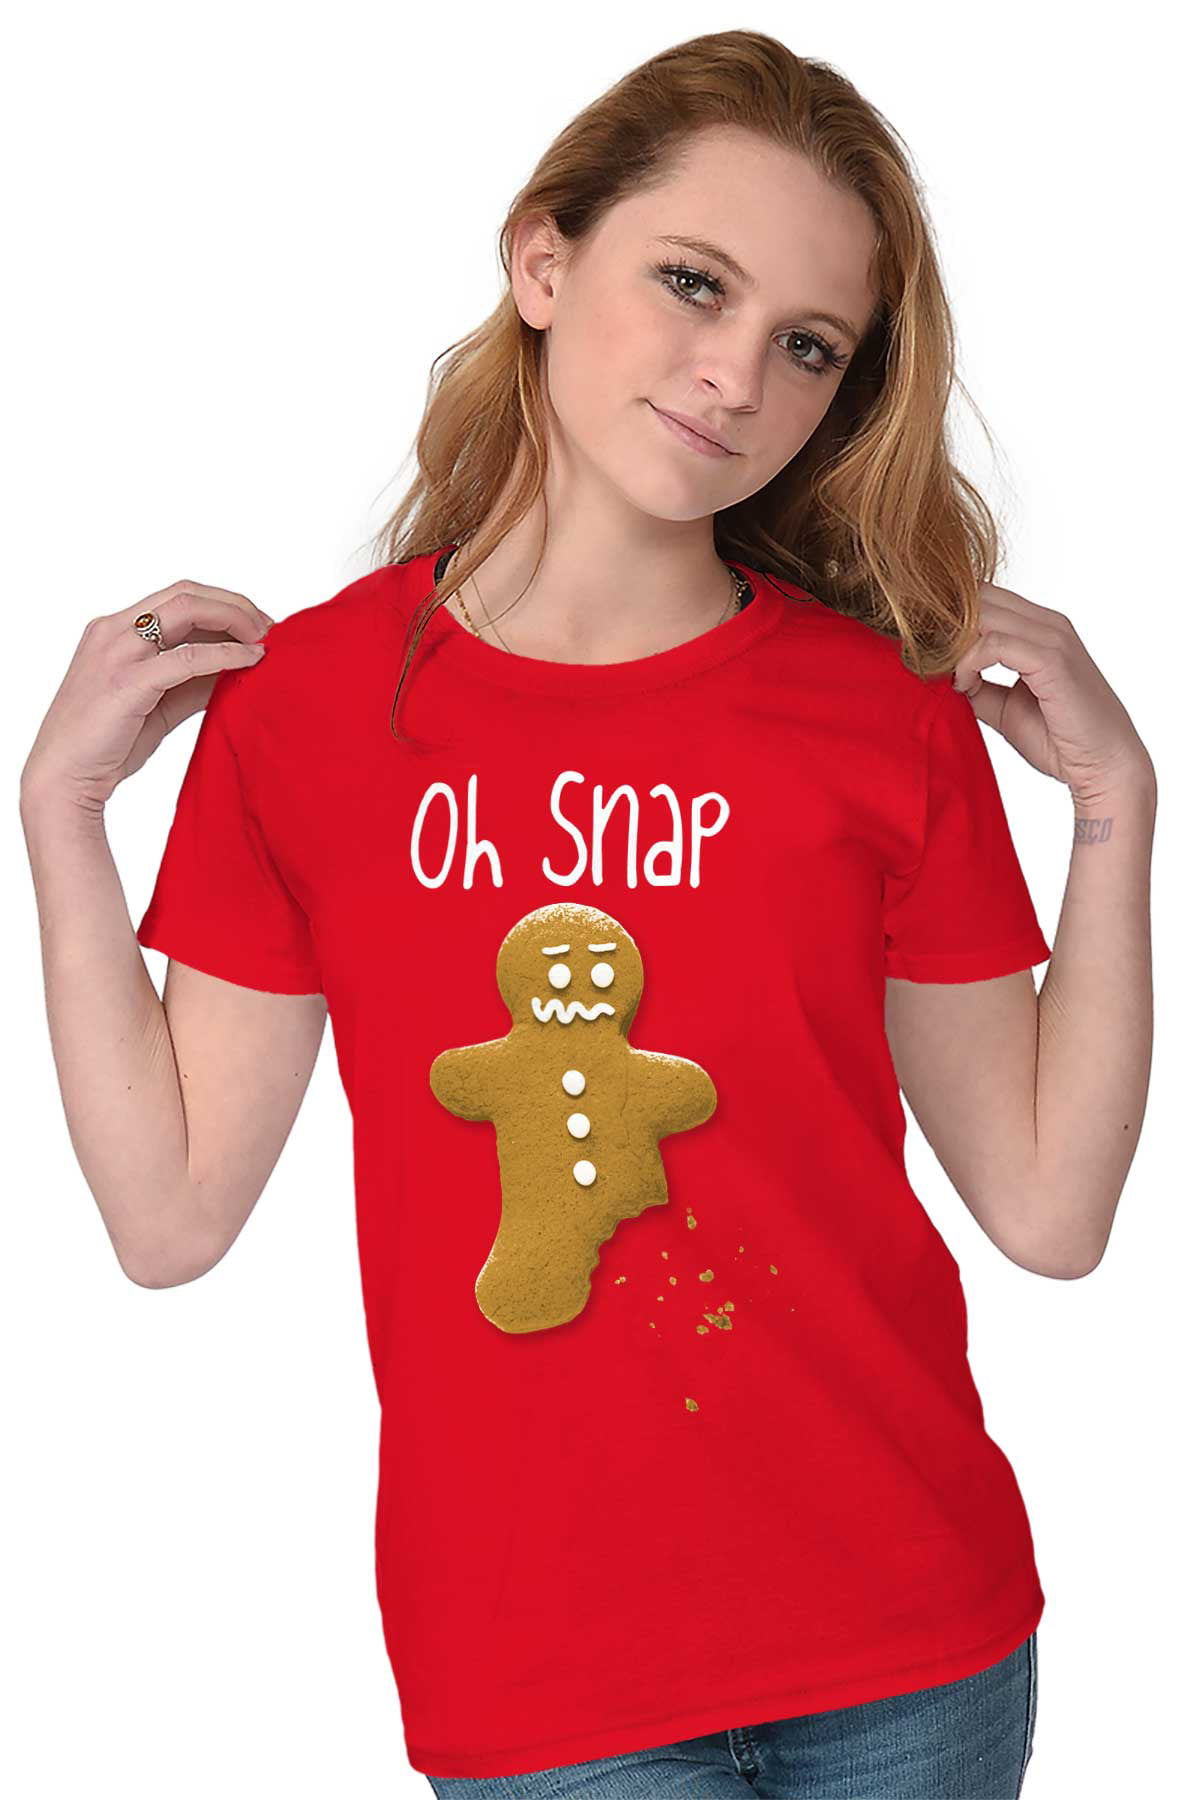 Oh Snap Gingerbread Man T-shirt Men's Funny Christmas Holiday Baking Shirt NEW 